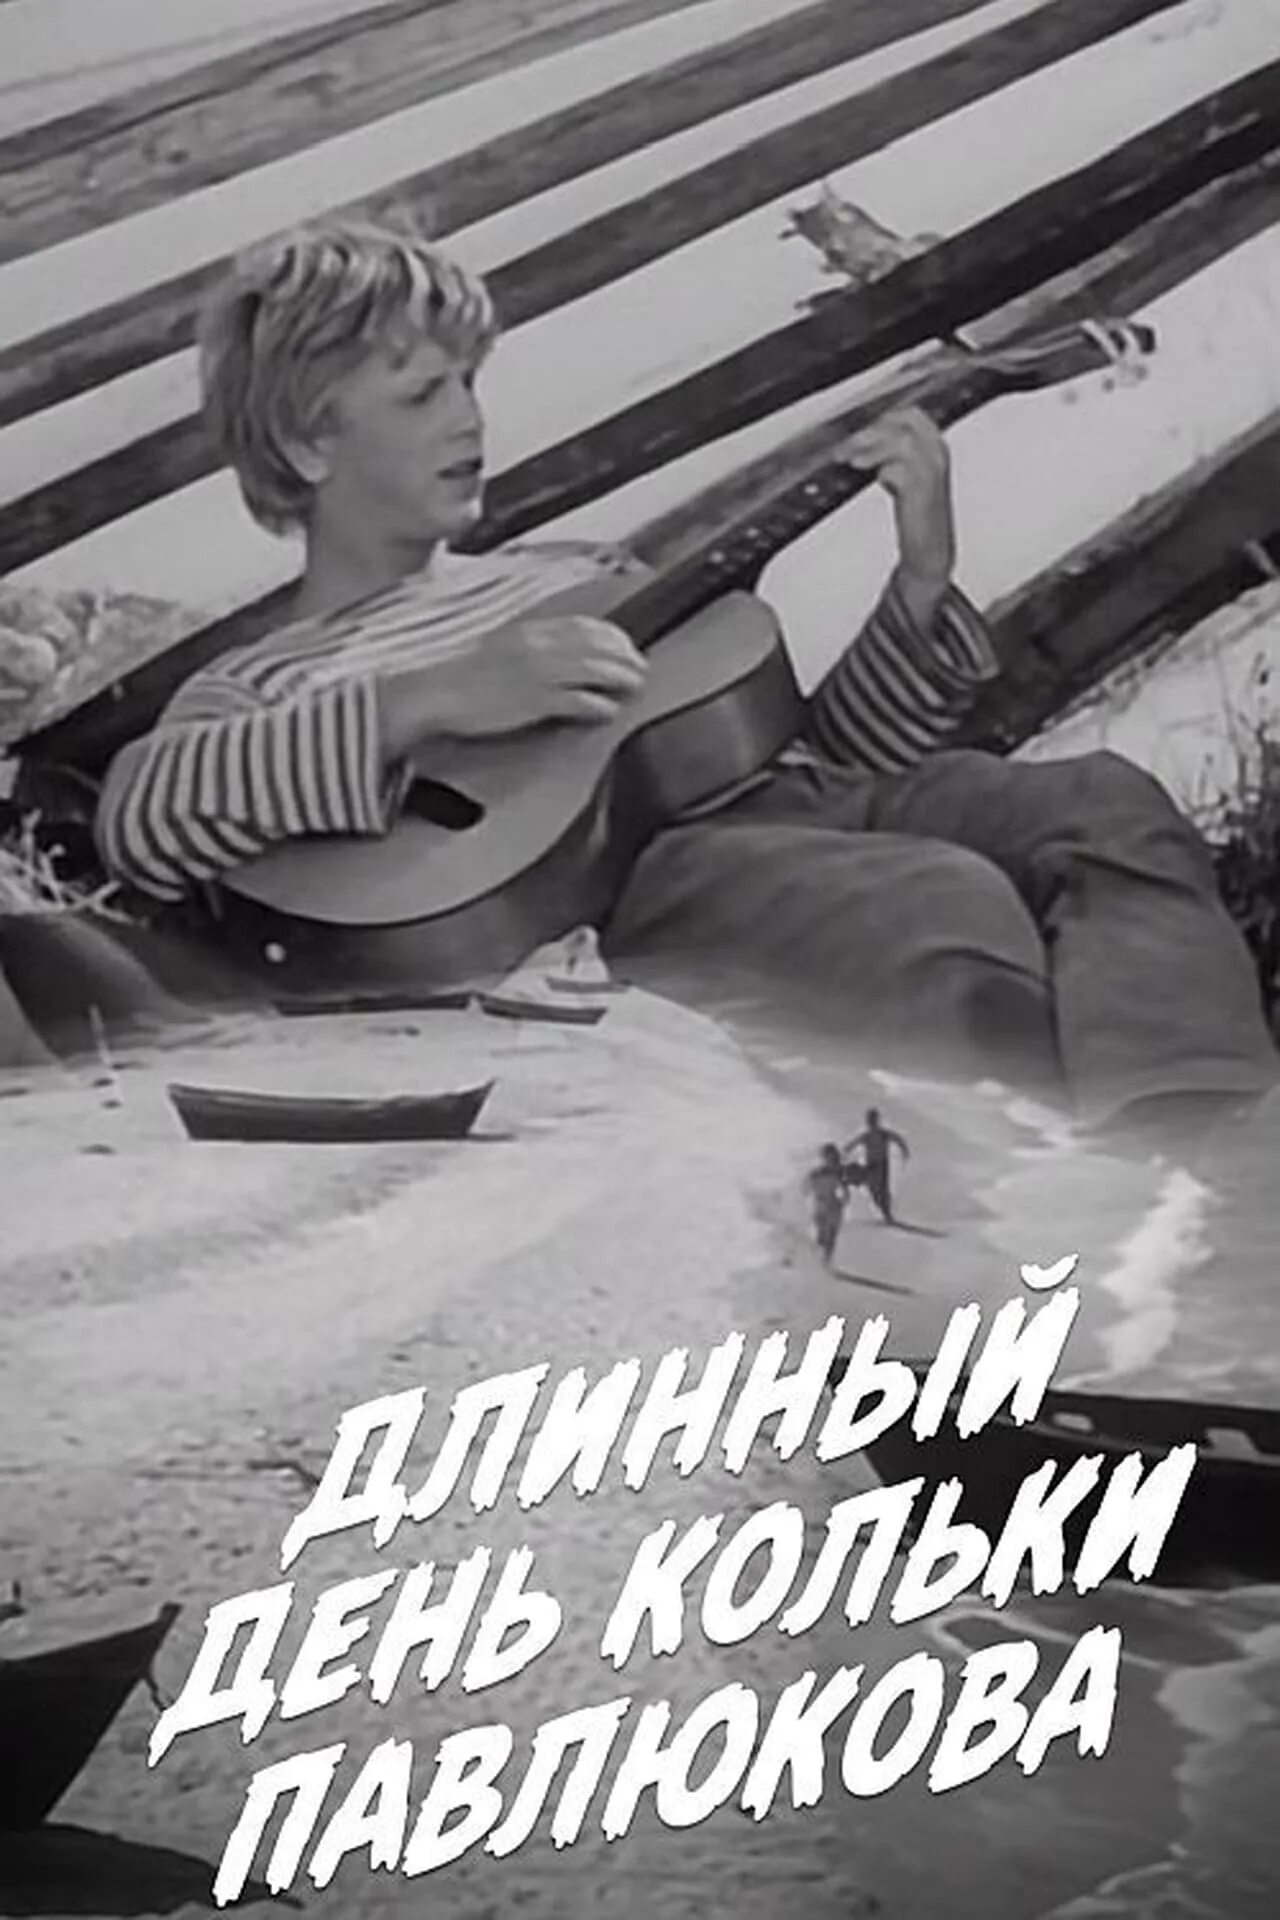 Последний длинный день. Длинный день Кольки Павлюкова. Длинный день (1961).